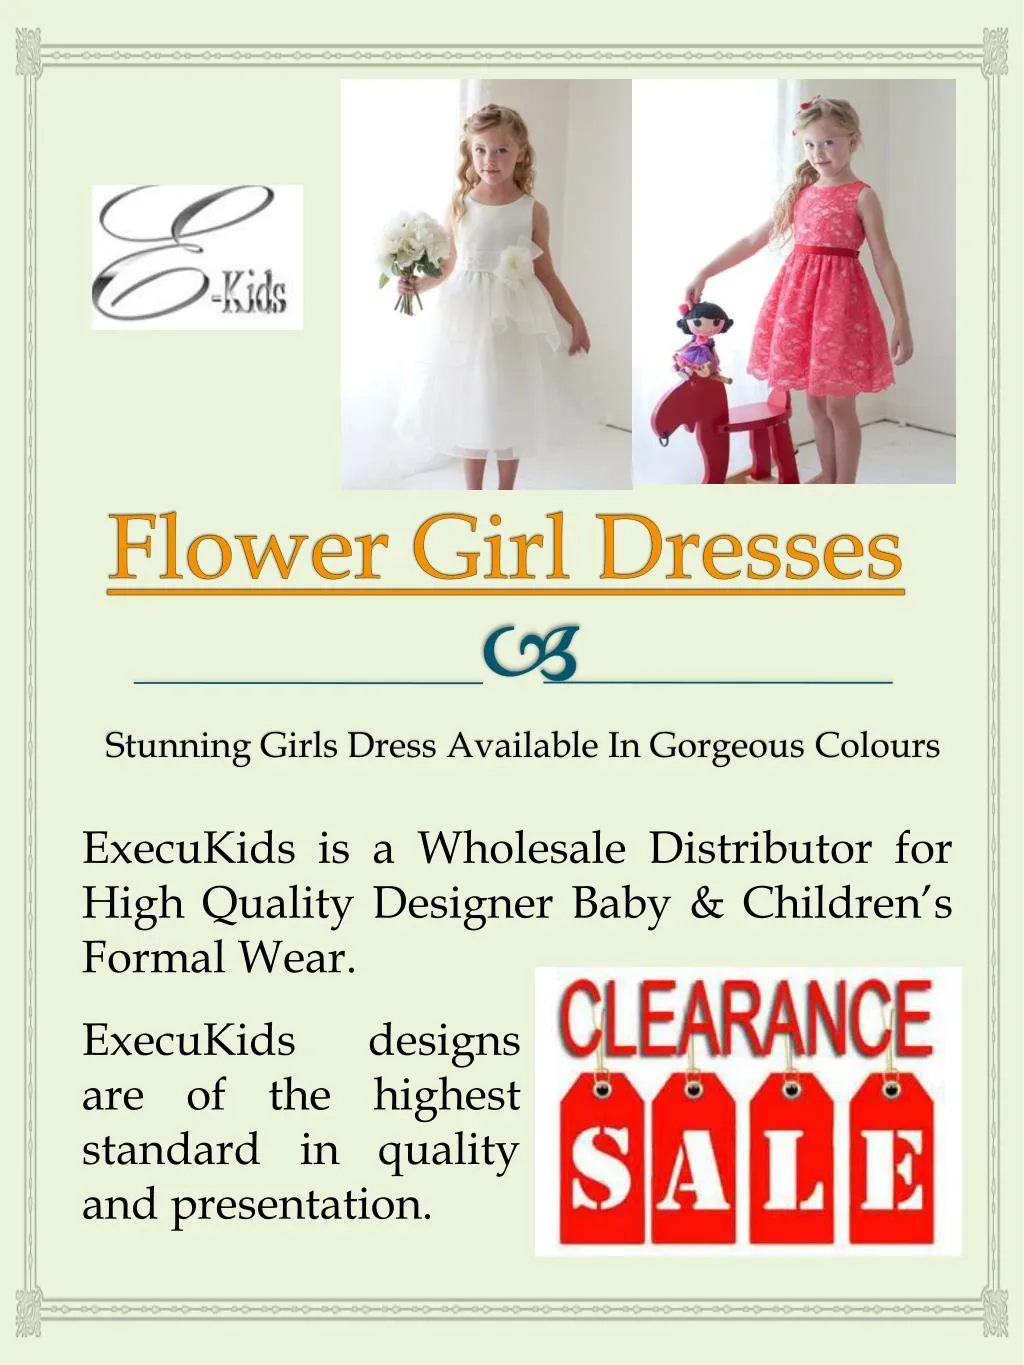 flower girl dresses